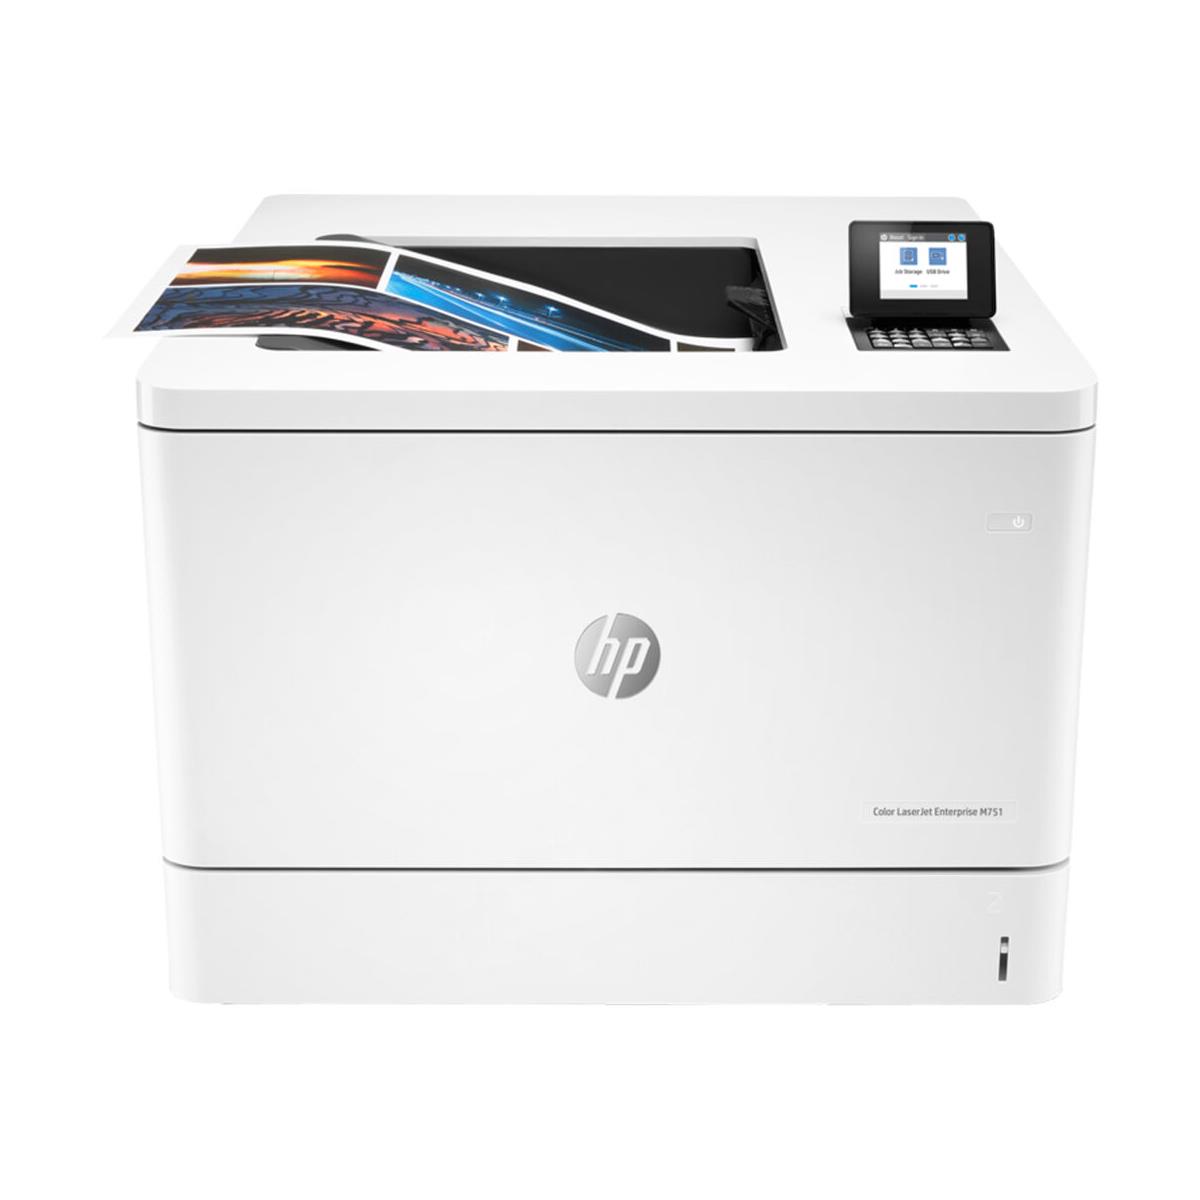 Image of HP LaserJet Enterprise M751dn Duplex Color Laser Printer